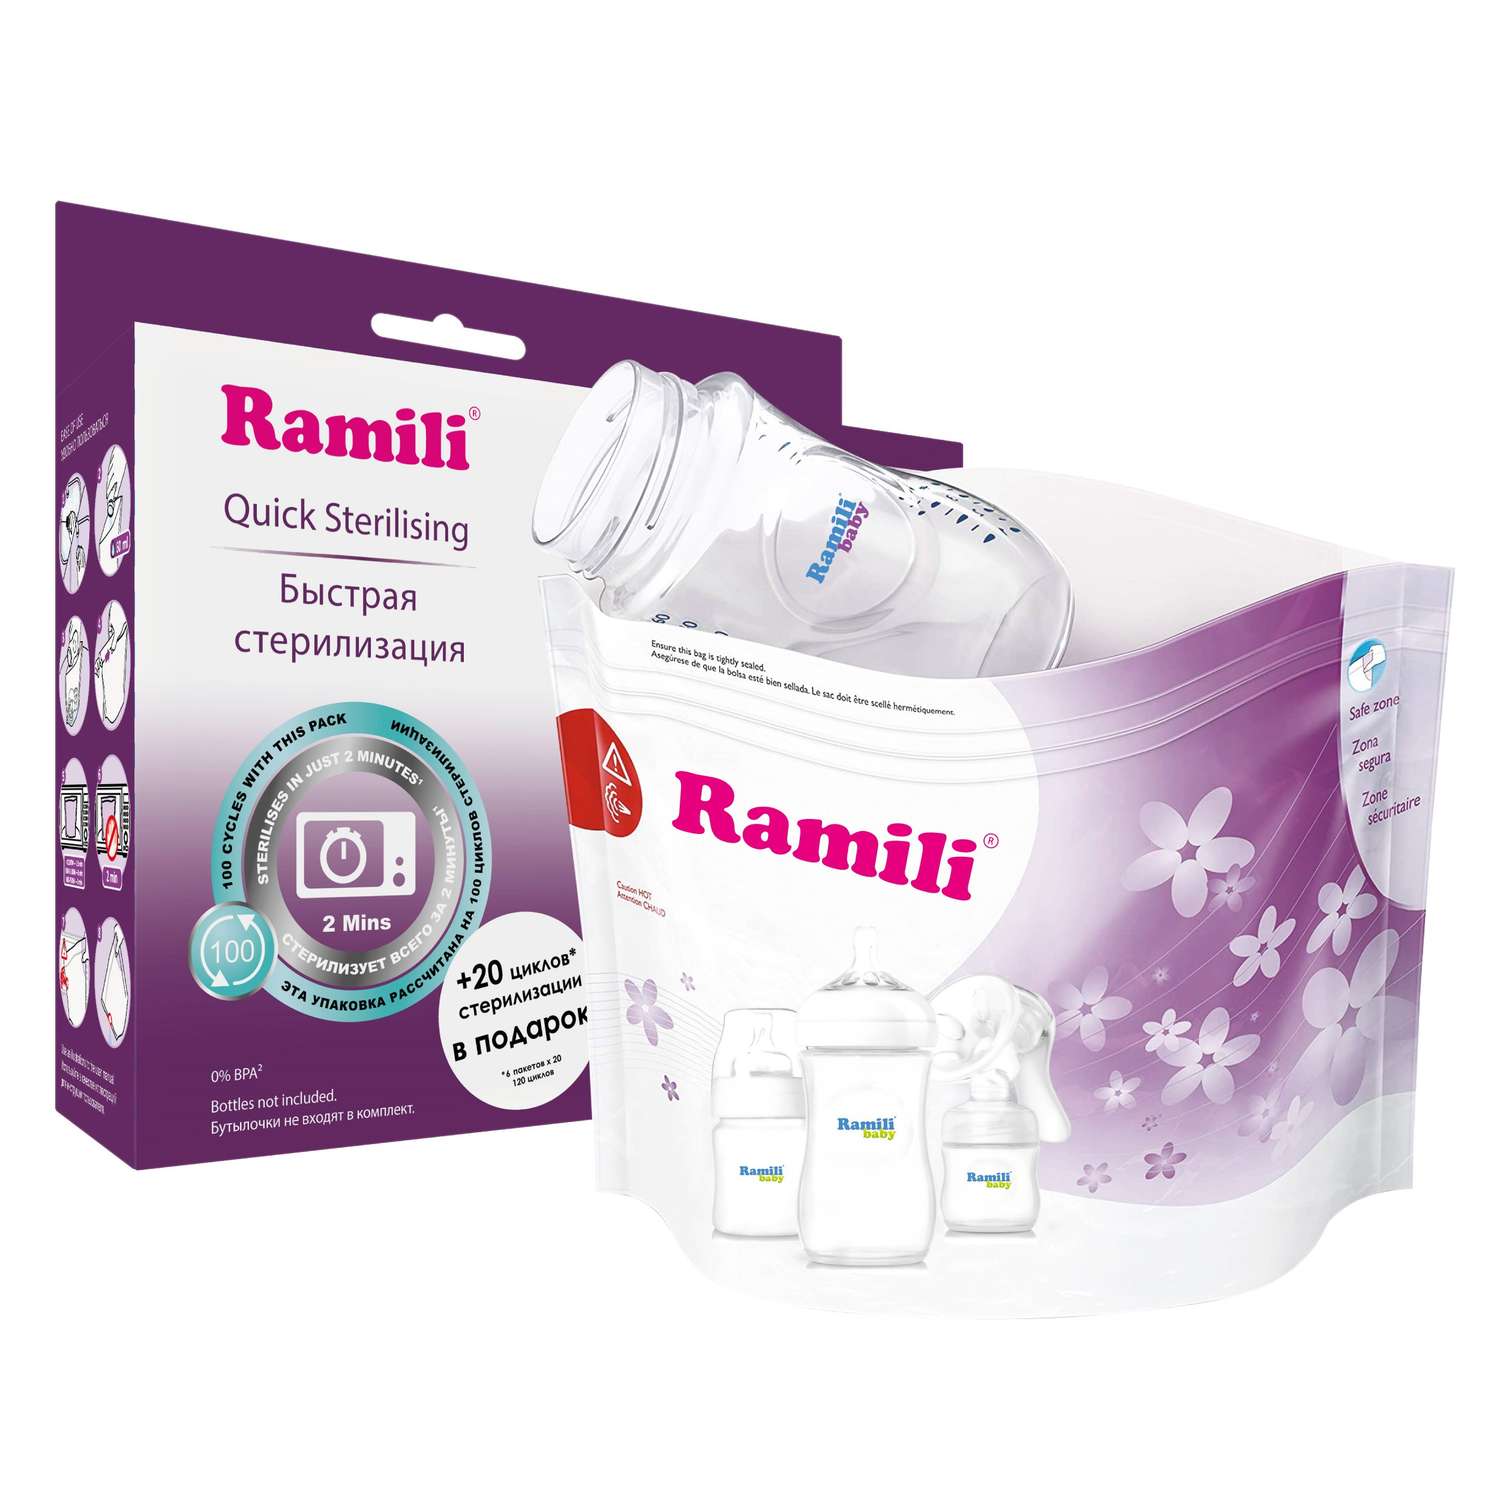 Пакеты для стерилизации Ramili в микроволновой печи RSB105 - фото 2